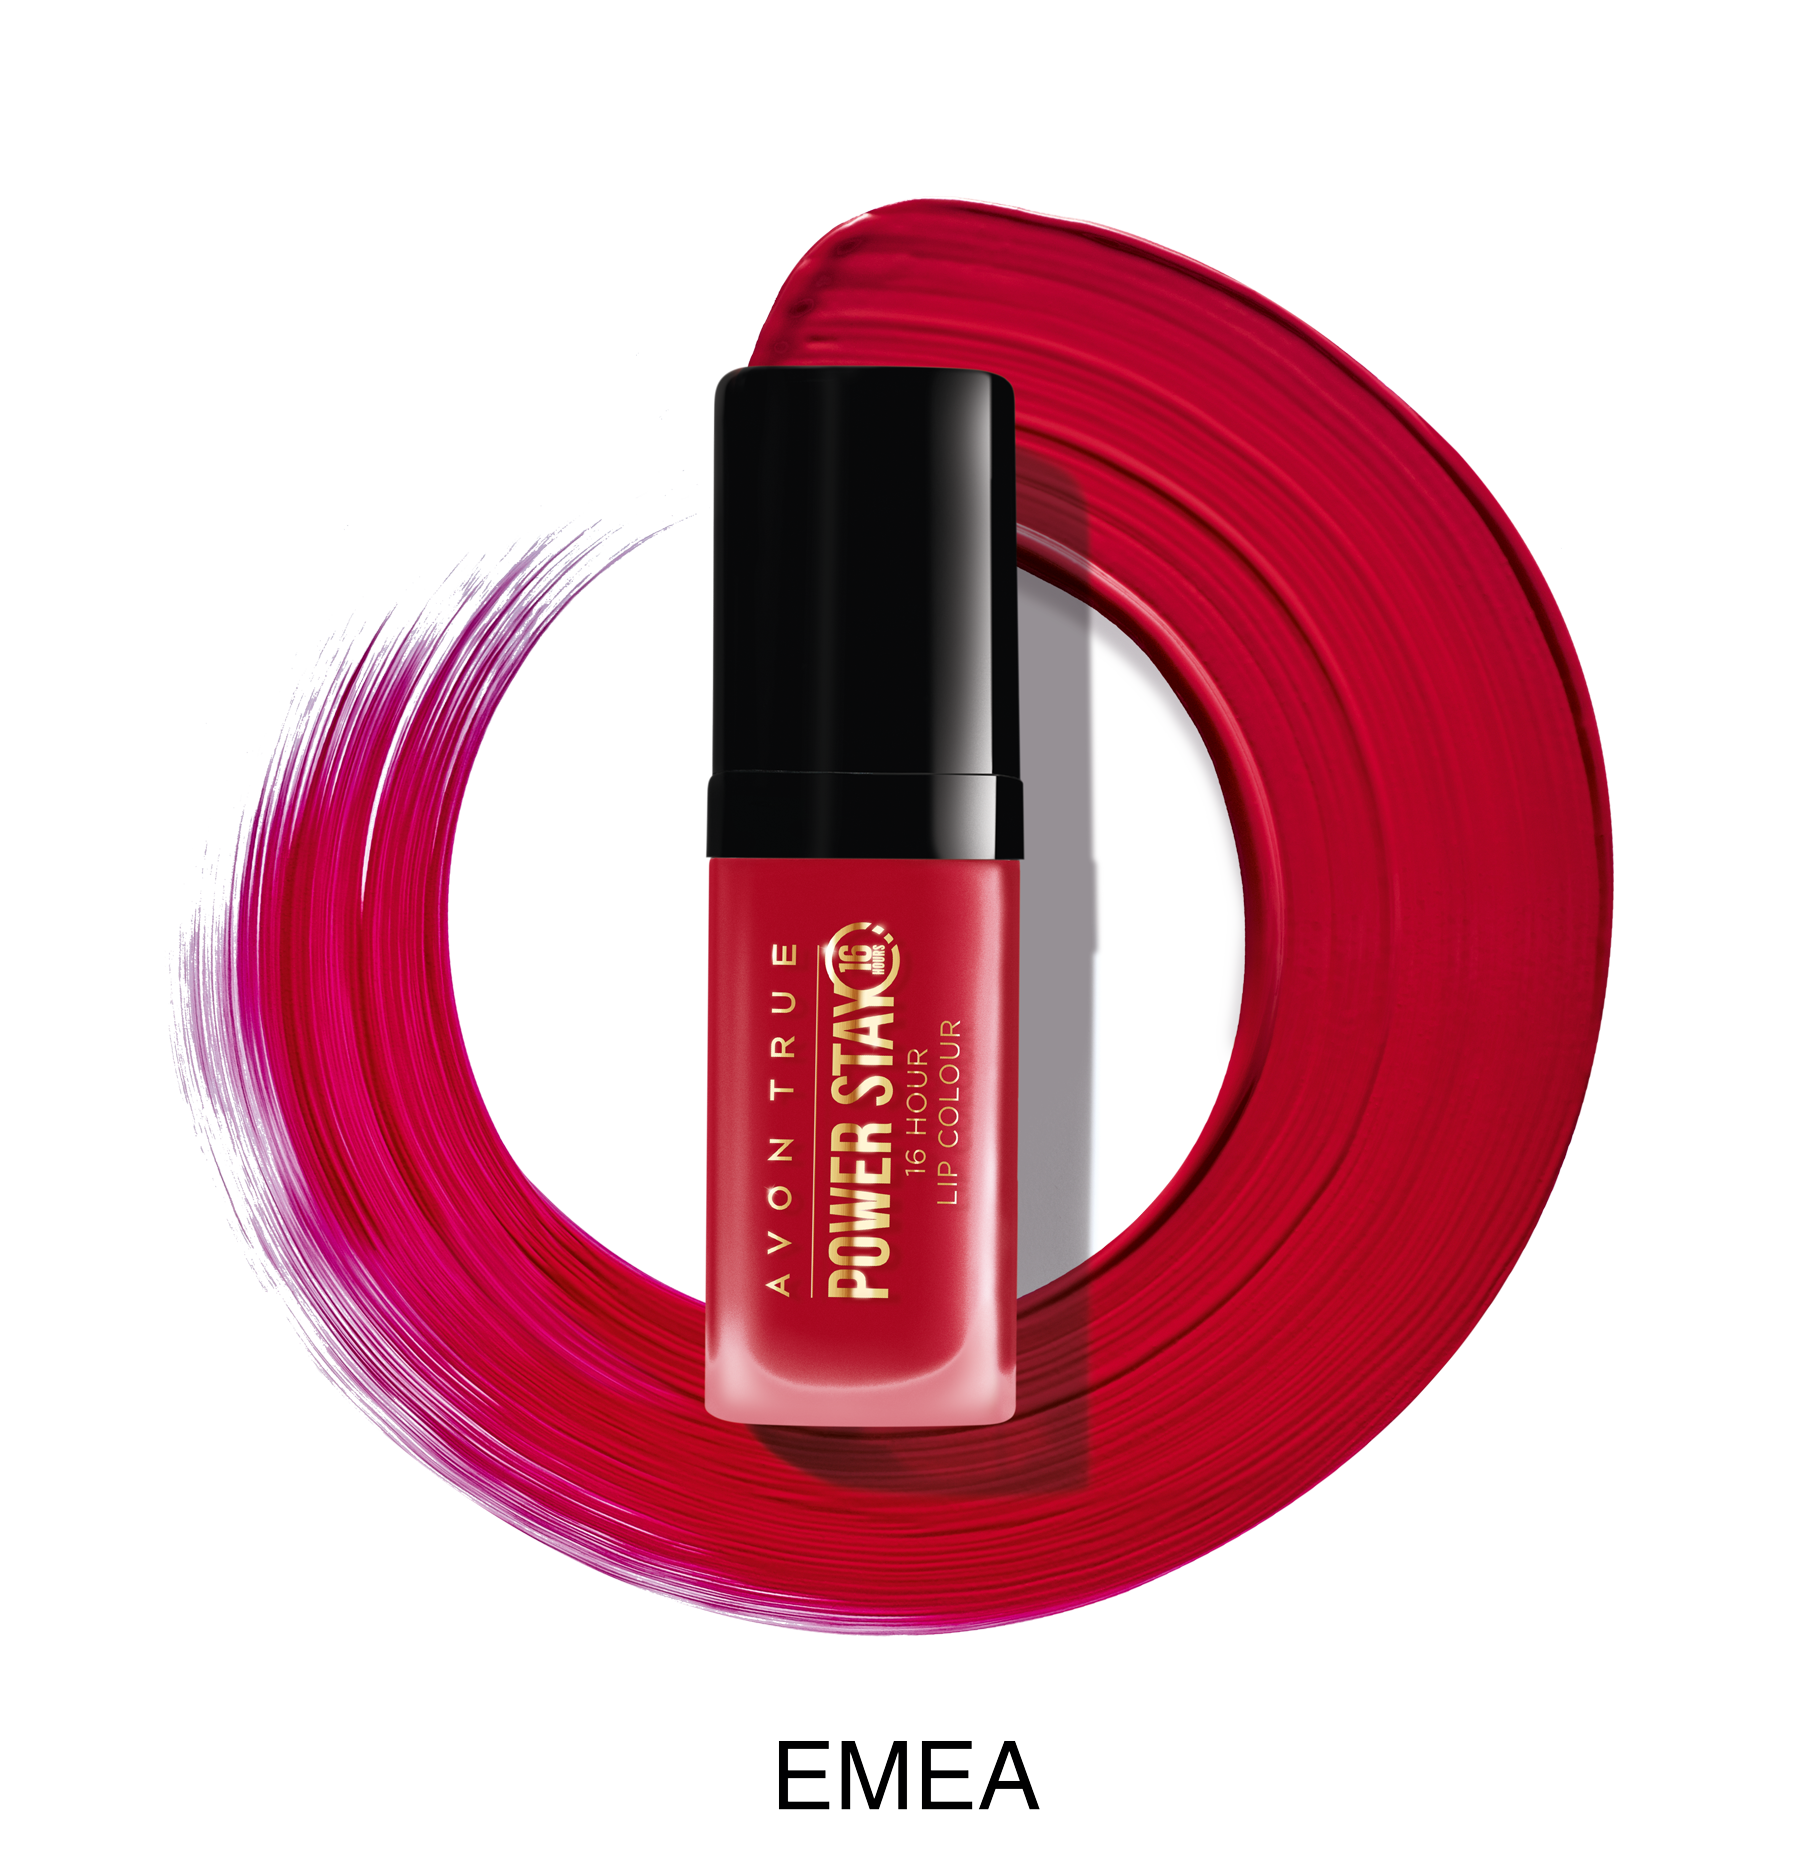 Power Stay ruž za usne nijansa Resilient Red 599 din 1 Makeup kolekcija otporna na sve – od svitanja do sumraka